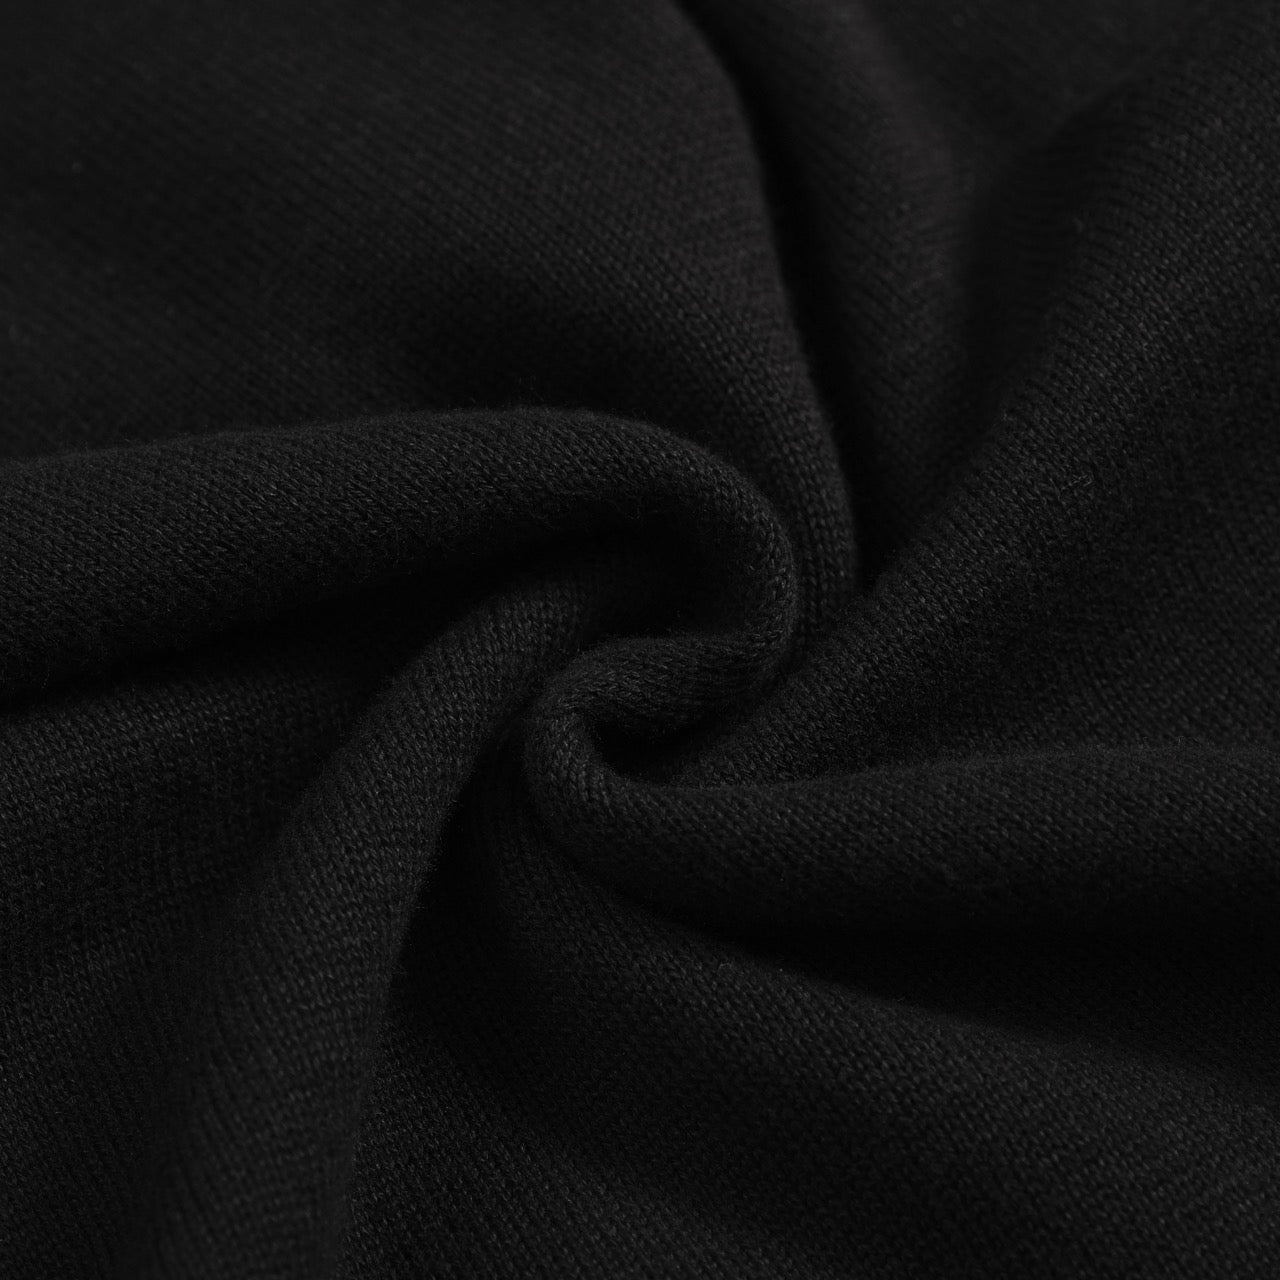 Men's black knit short sleeved polo shirt